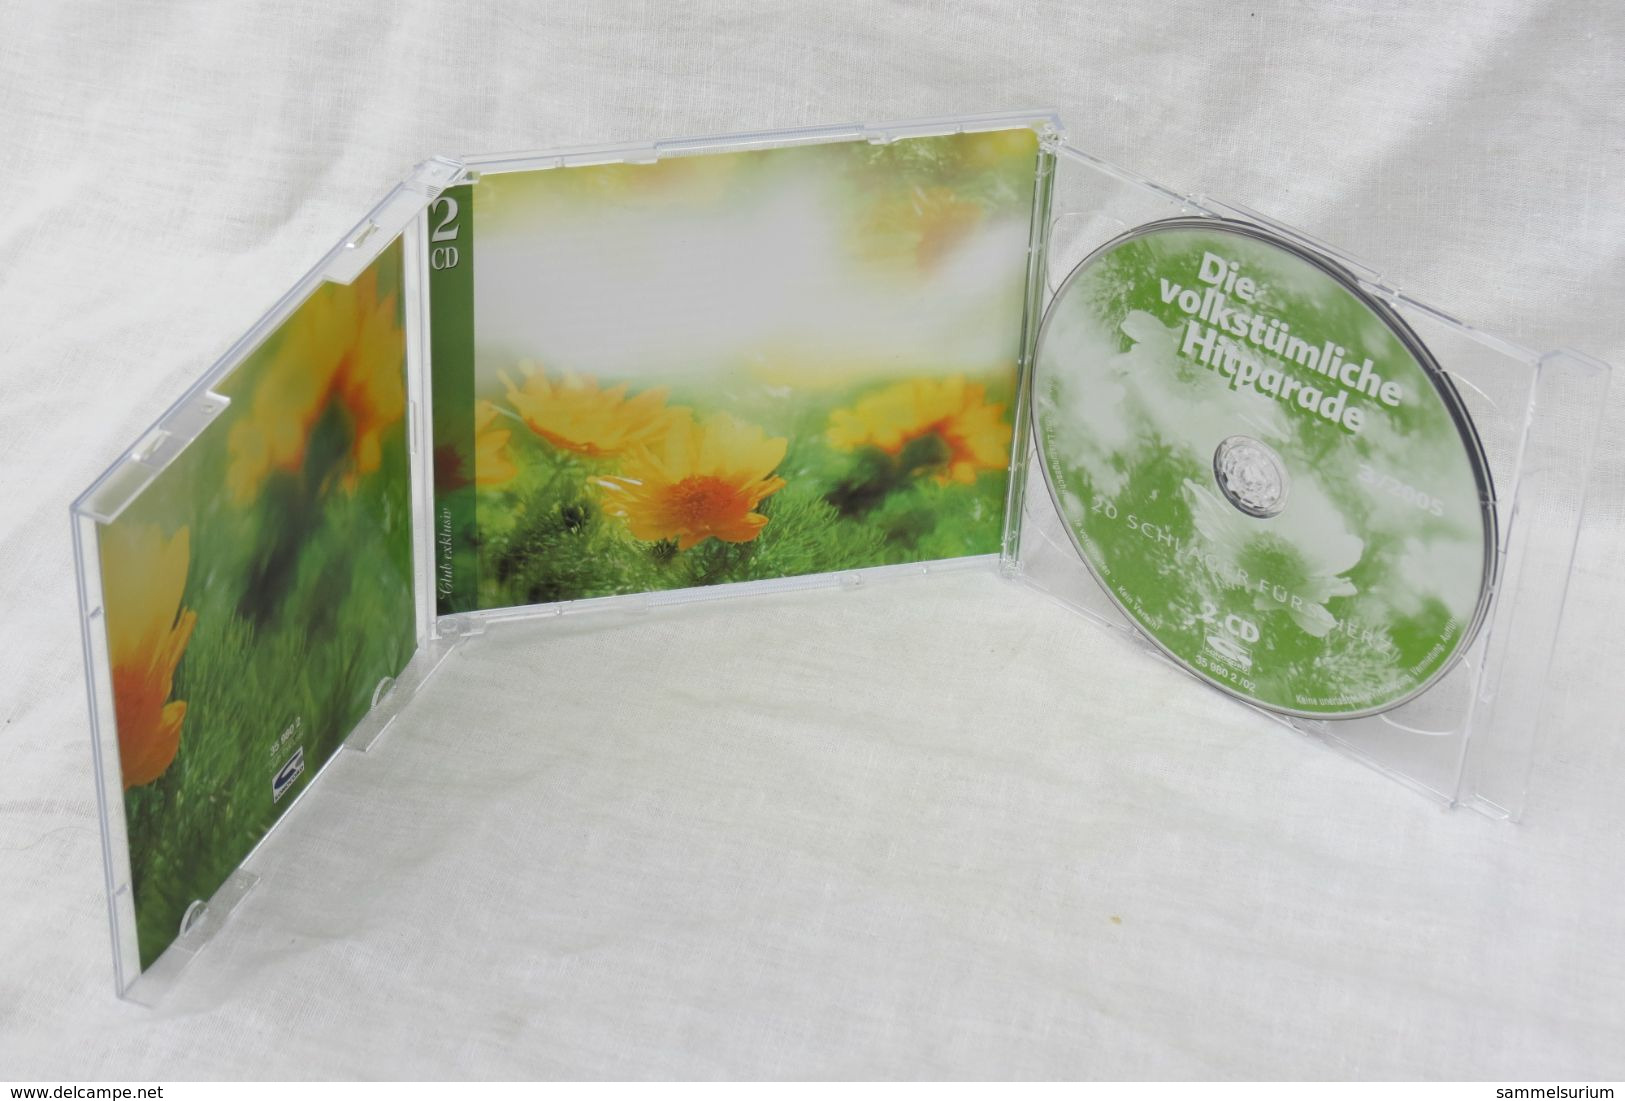 2 CDs "Die Volkstümliche Hitparade" 40 Schlager Fürs Herz, Ausgabe 3/2005 - Autres - Musique Allemande